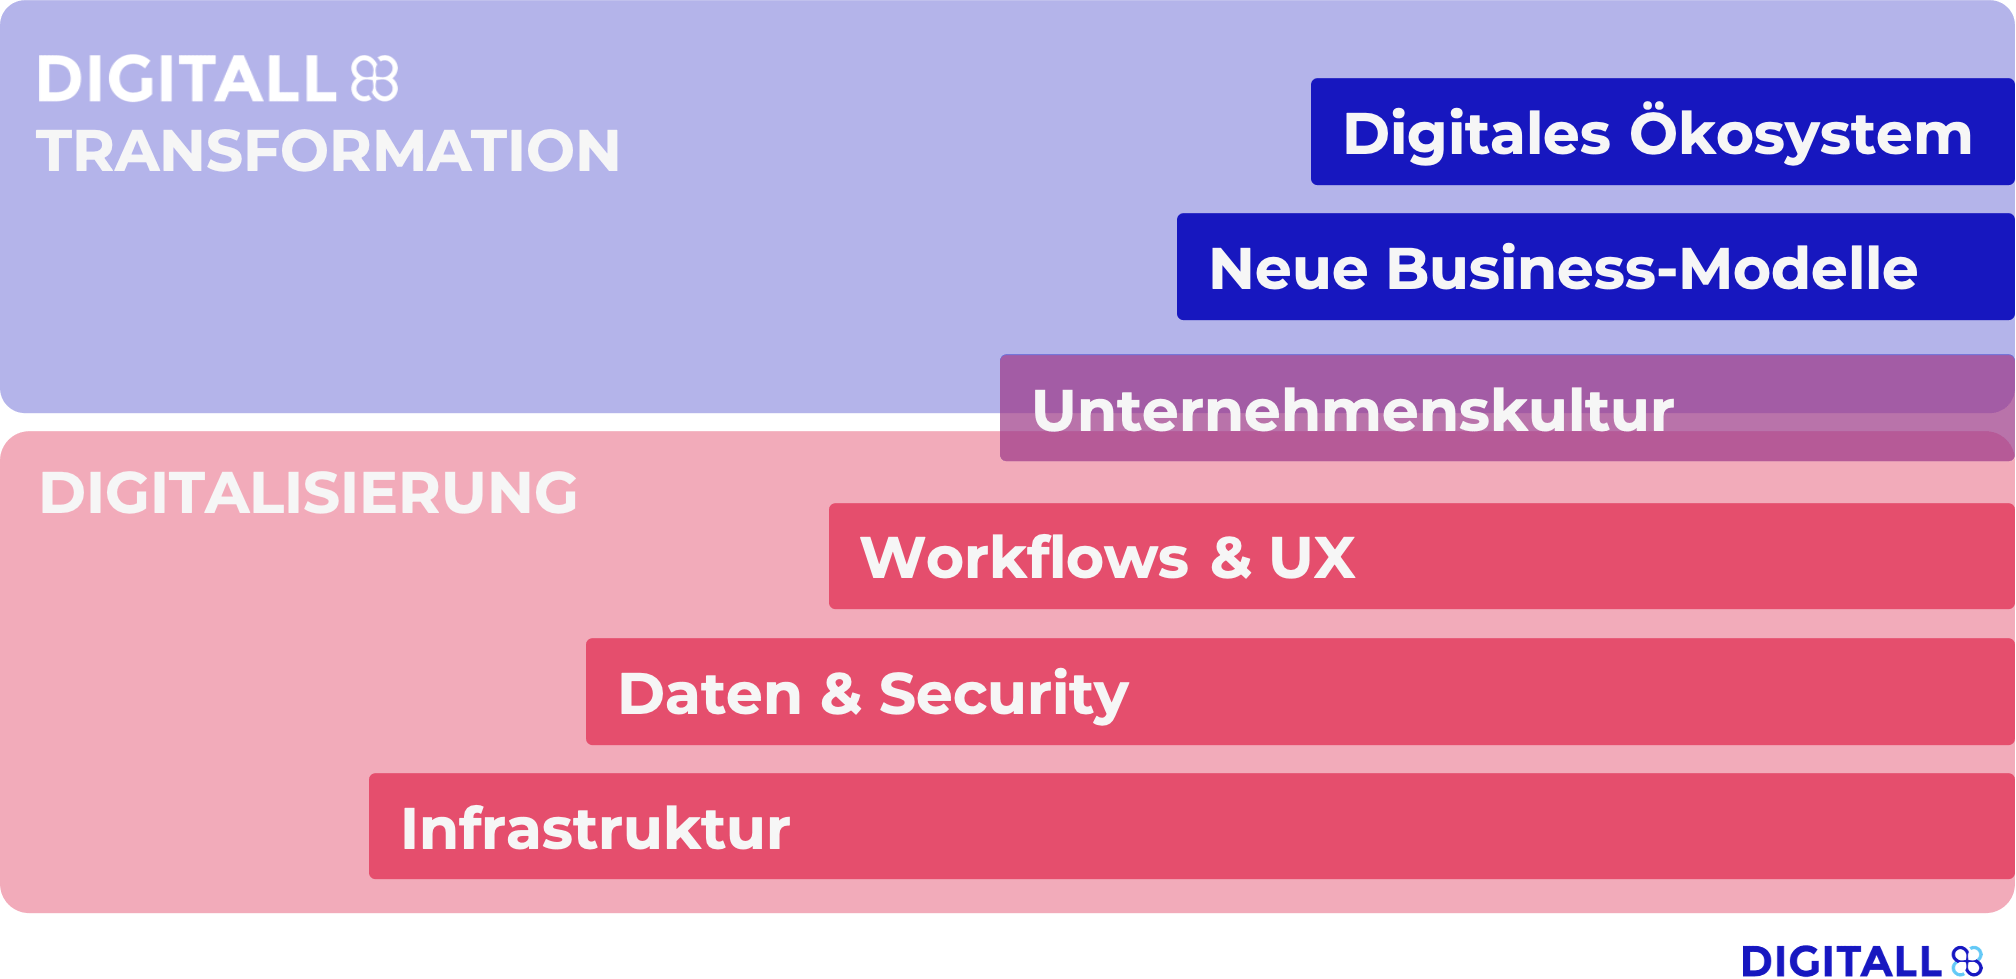 Pyramide (von unten nach oben) Digitalisierung: Infrastruktur, Daten & Security, Workflows & UX Zwischenthema: Unternehmenskultur Digitale Transformation: Neue Business-Modelle, Digitales Ökosystem